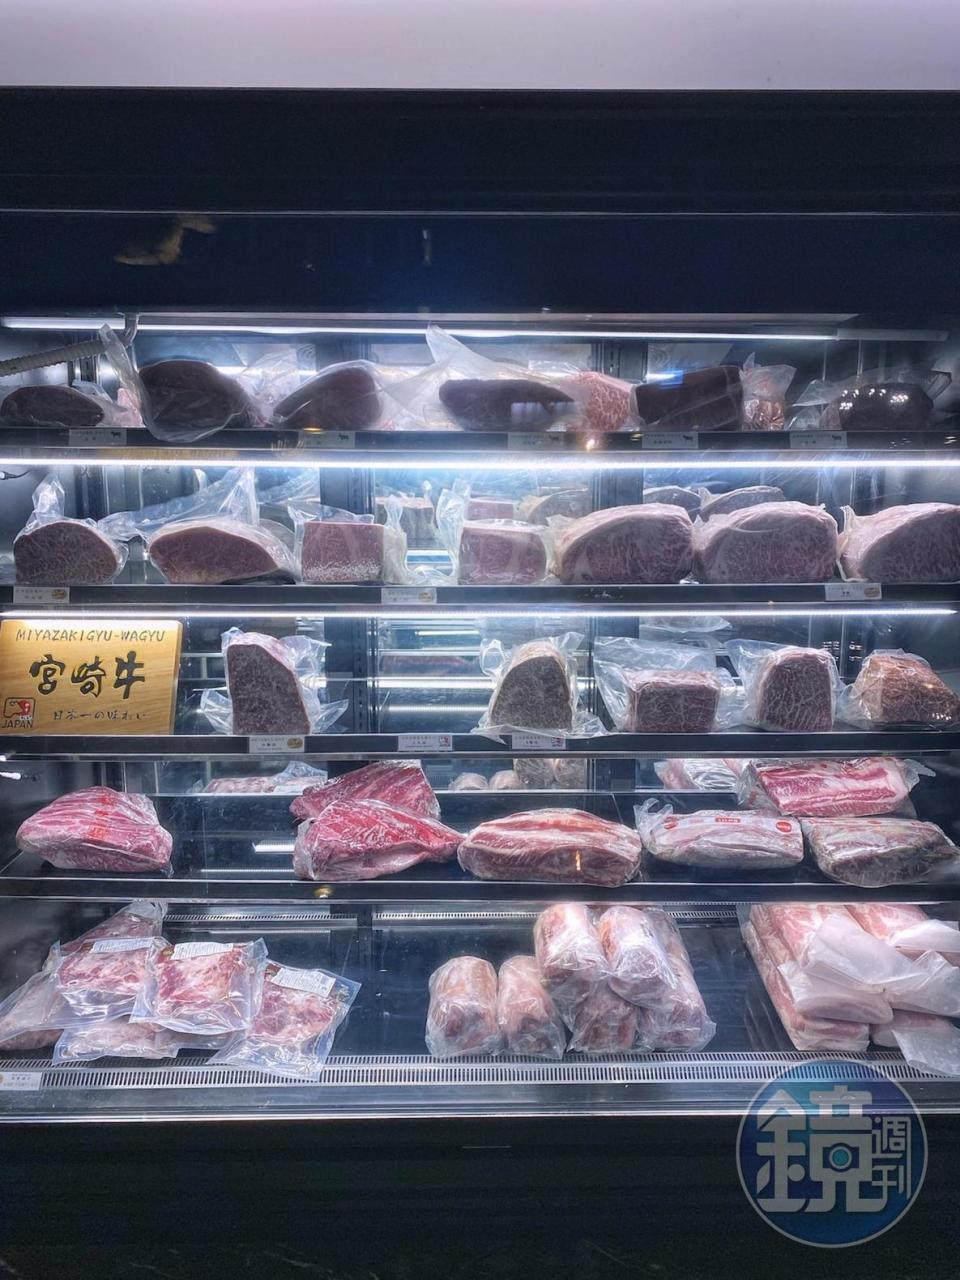 冰櫃裡陳列宮崎牛、近江牛等知名品牌和牛。